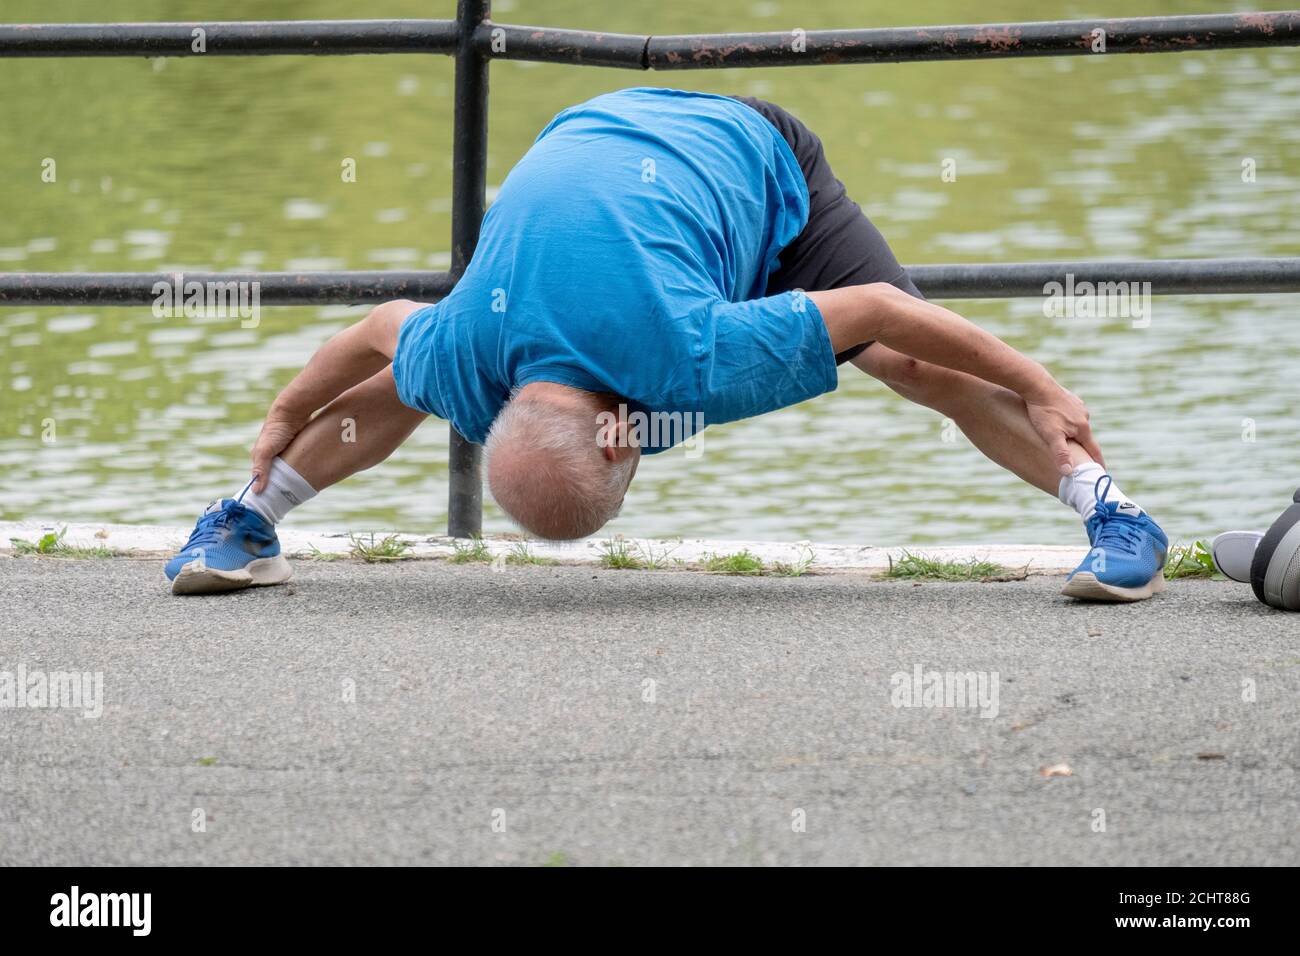 Ein flink flexibler Senior tut etwas extremes Stretching, während er sich für einen Übungsspaziergang aufwärmt. In einem Park in Queens, New York City. Stockfoto